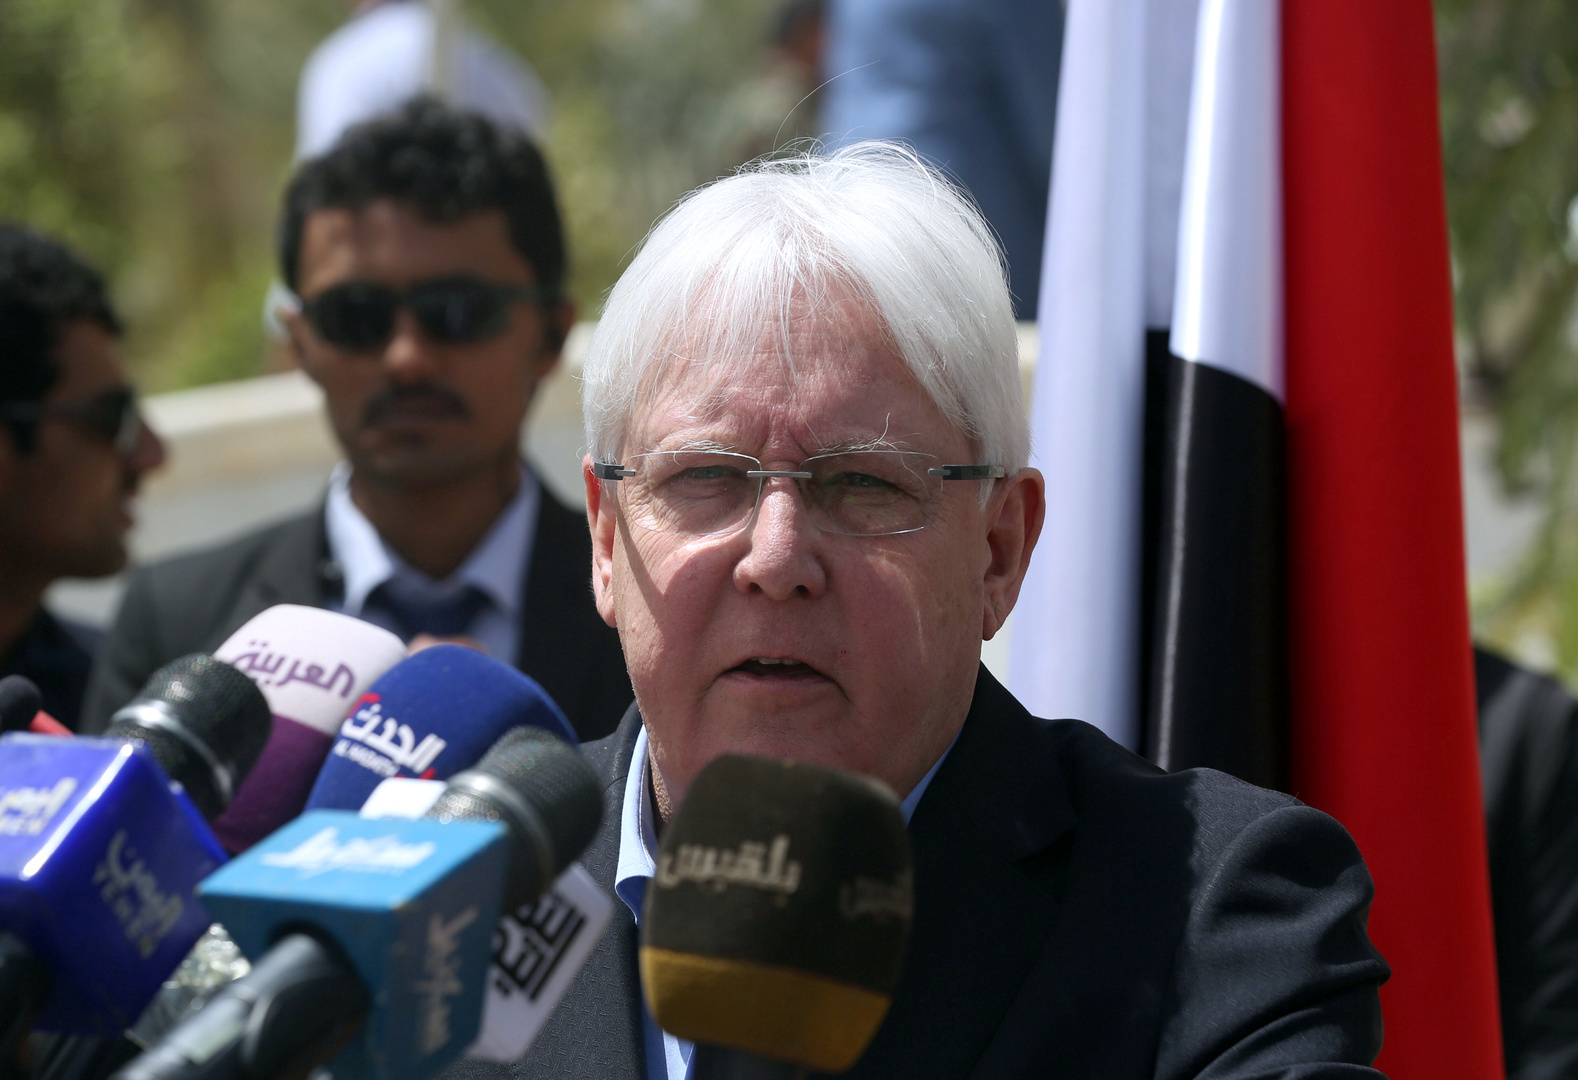 غريفيث يبحث مع مسؤول إيراني وقف إطلاق النار في اليمن